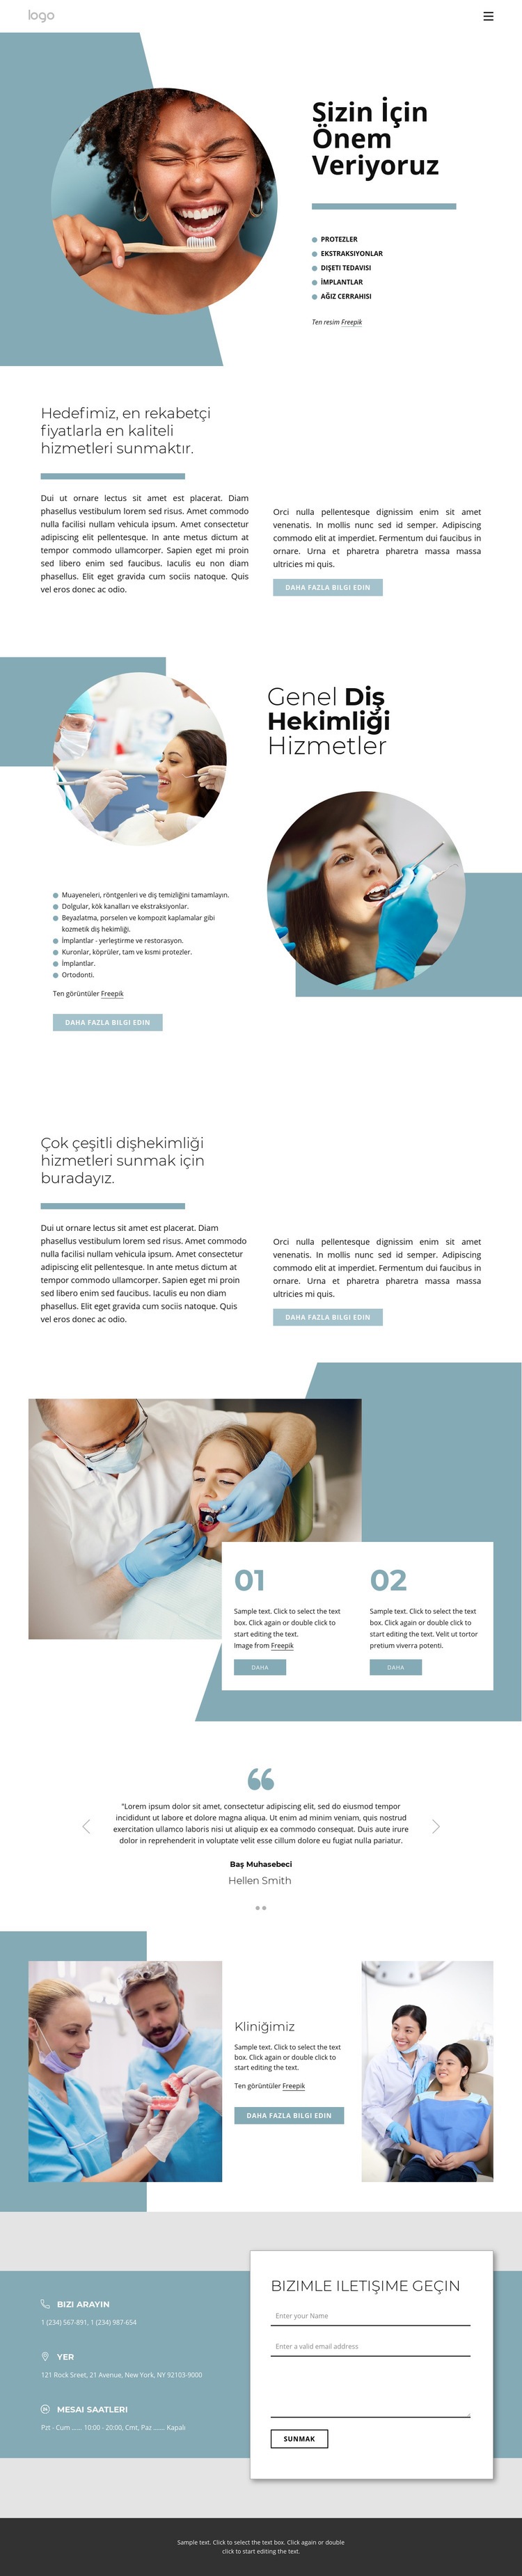 Yüksek kaliteli diş hizmetleri Web Sitesi Mockup'ı